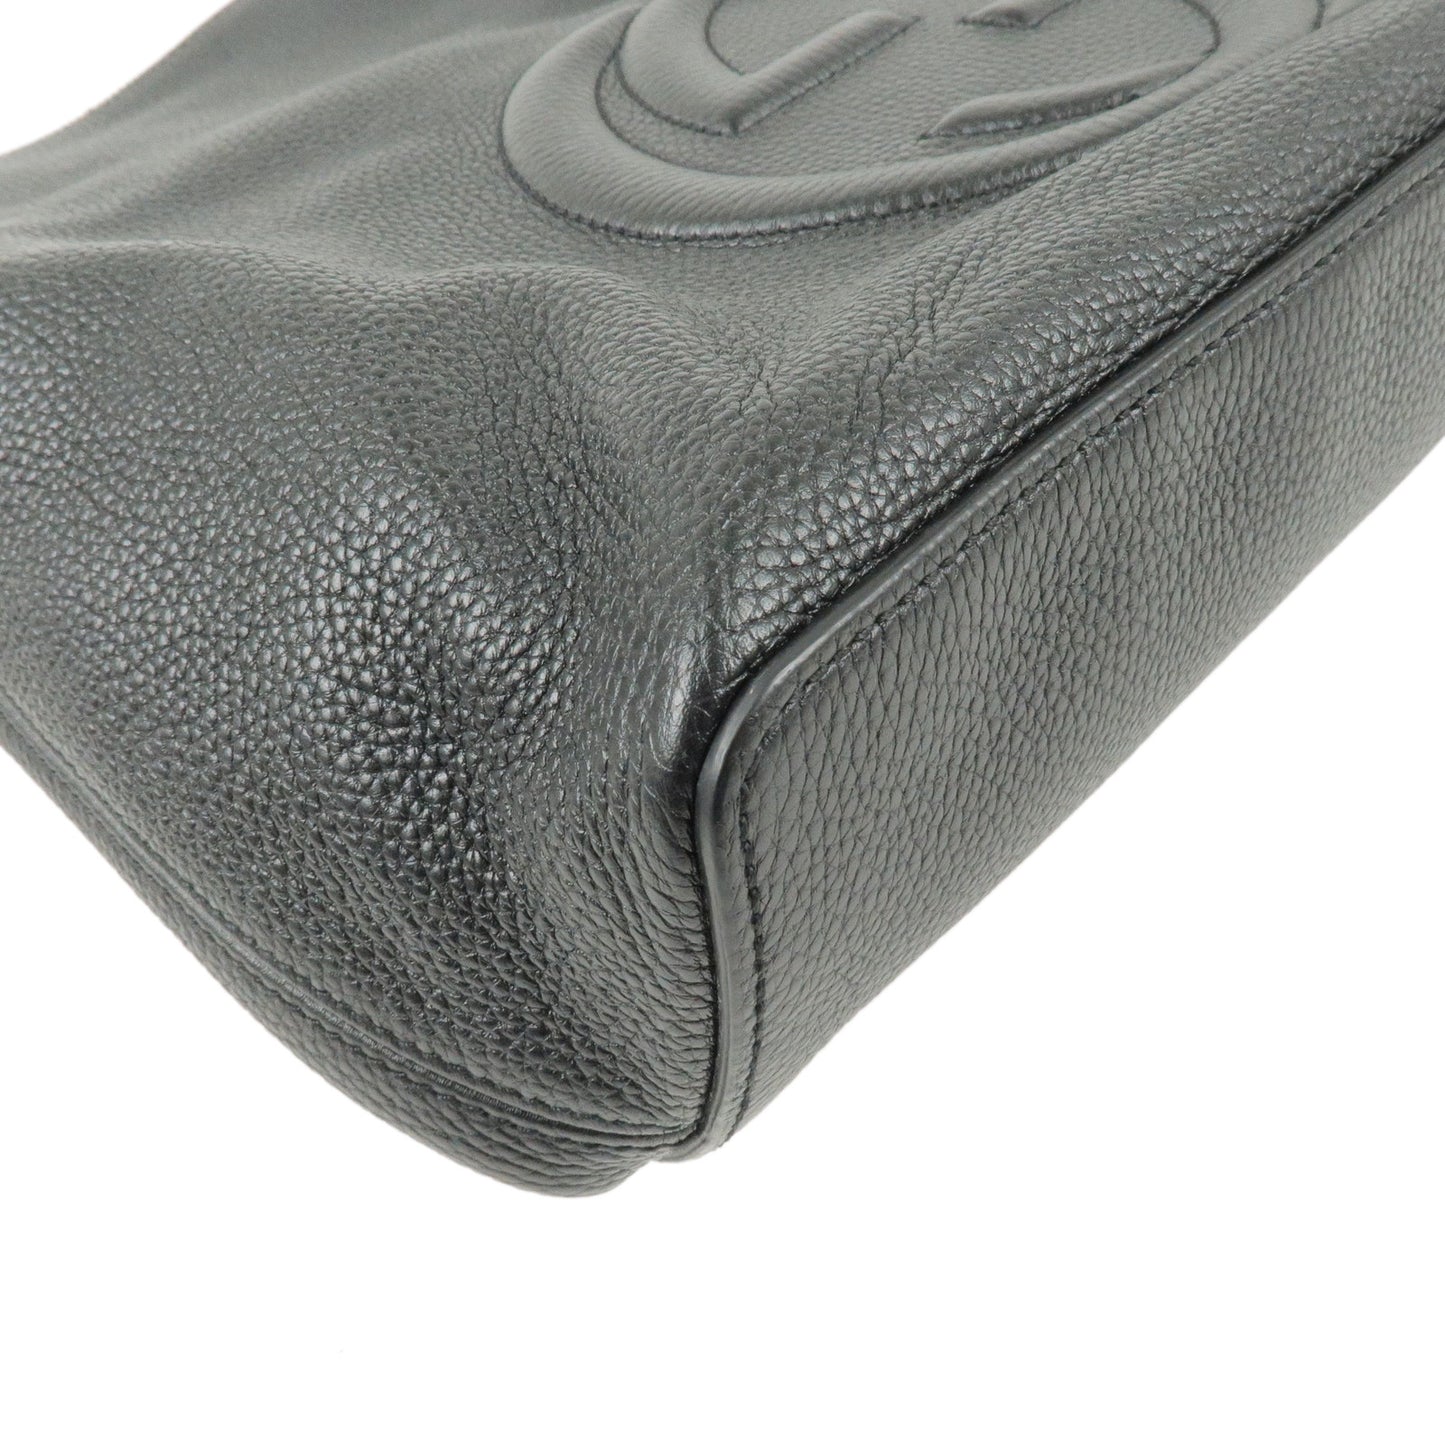 GUCCI SOHO Interlocking G Leather Shoudler Bag Black 536194